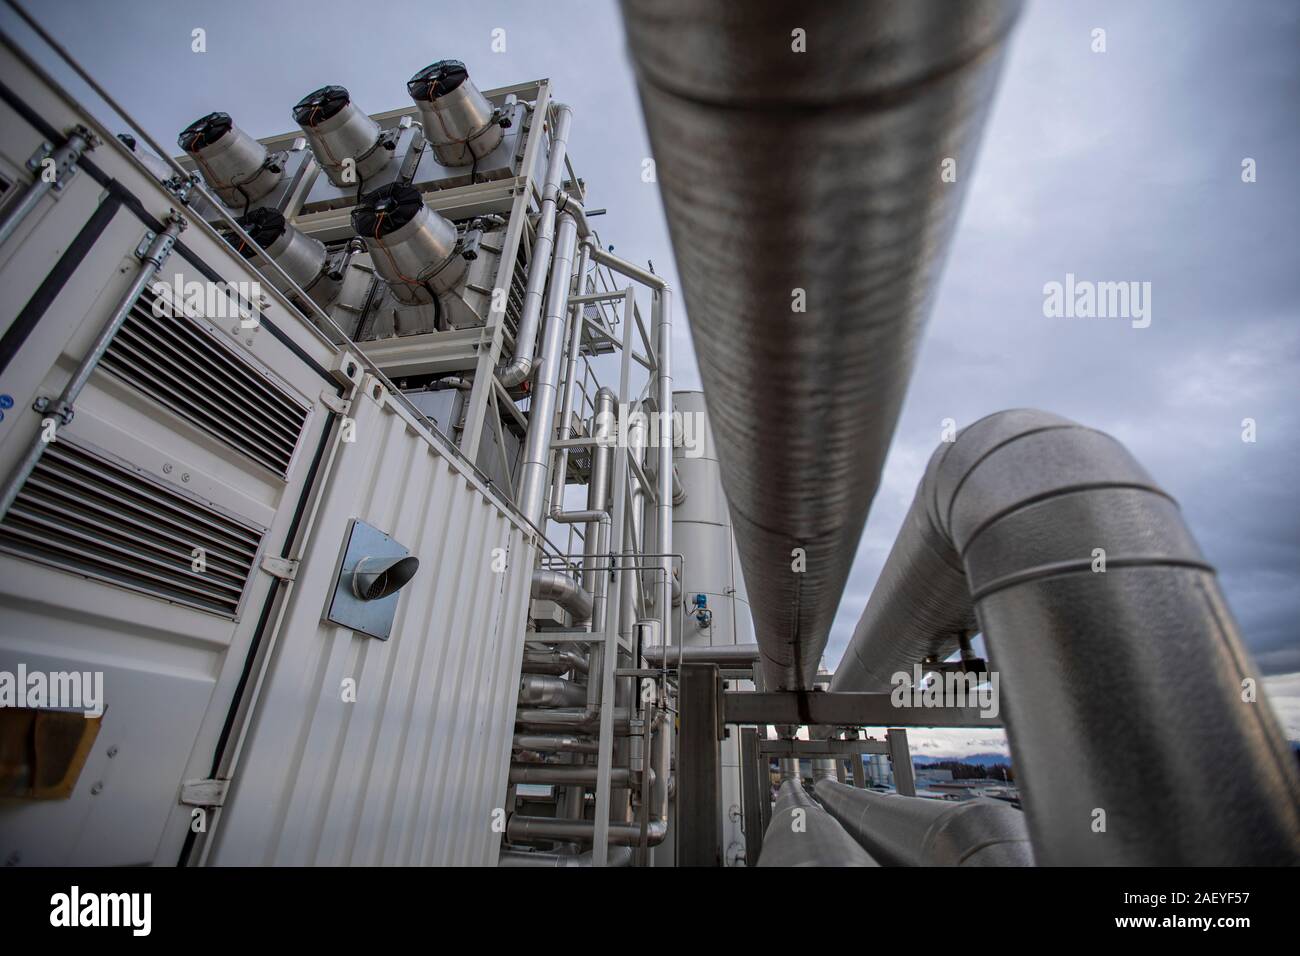 L'entreprise suisse Climeworks exécutent 30 CAD - Direct - Captage de l'air ventilateurs sur le toit de cet incinérateur d'ordures à Hinwil en dehors de Zurich. Fondée en 2009 par Christoph Gebald et Jan Wurzbacher, l'entreprise a commercialisé l'unité de capture de carbone modulaire, chacun est capable de pomper jusqu'à 135 kilo de CO2 de l'air tous les jours. Le processus est exigeant, l'énergie et les unités dans Hilwil utiliser le surplus d'énergie à partir de l'incinérateur pour exécuter les collectionneurs. En retour, le CO2 capté est utilisé à proximité de serre commerciale pour augmenter le rendement des cultures et également livrés à une eau minérale ma Banque D'Images